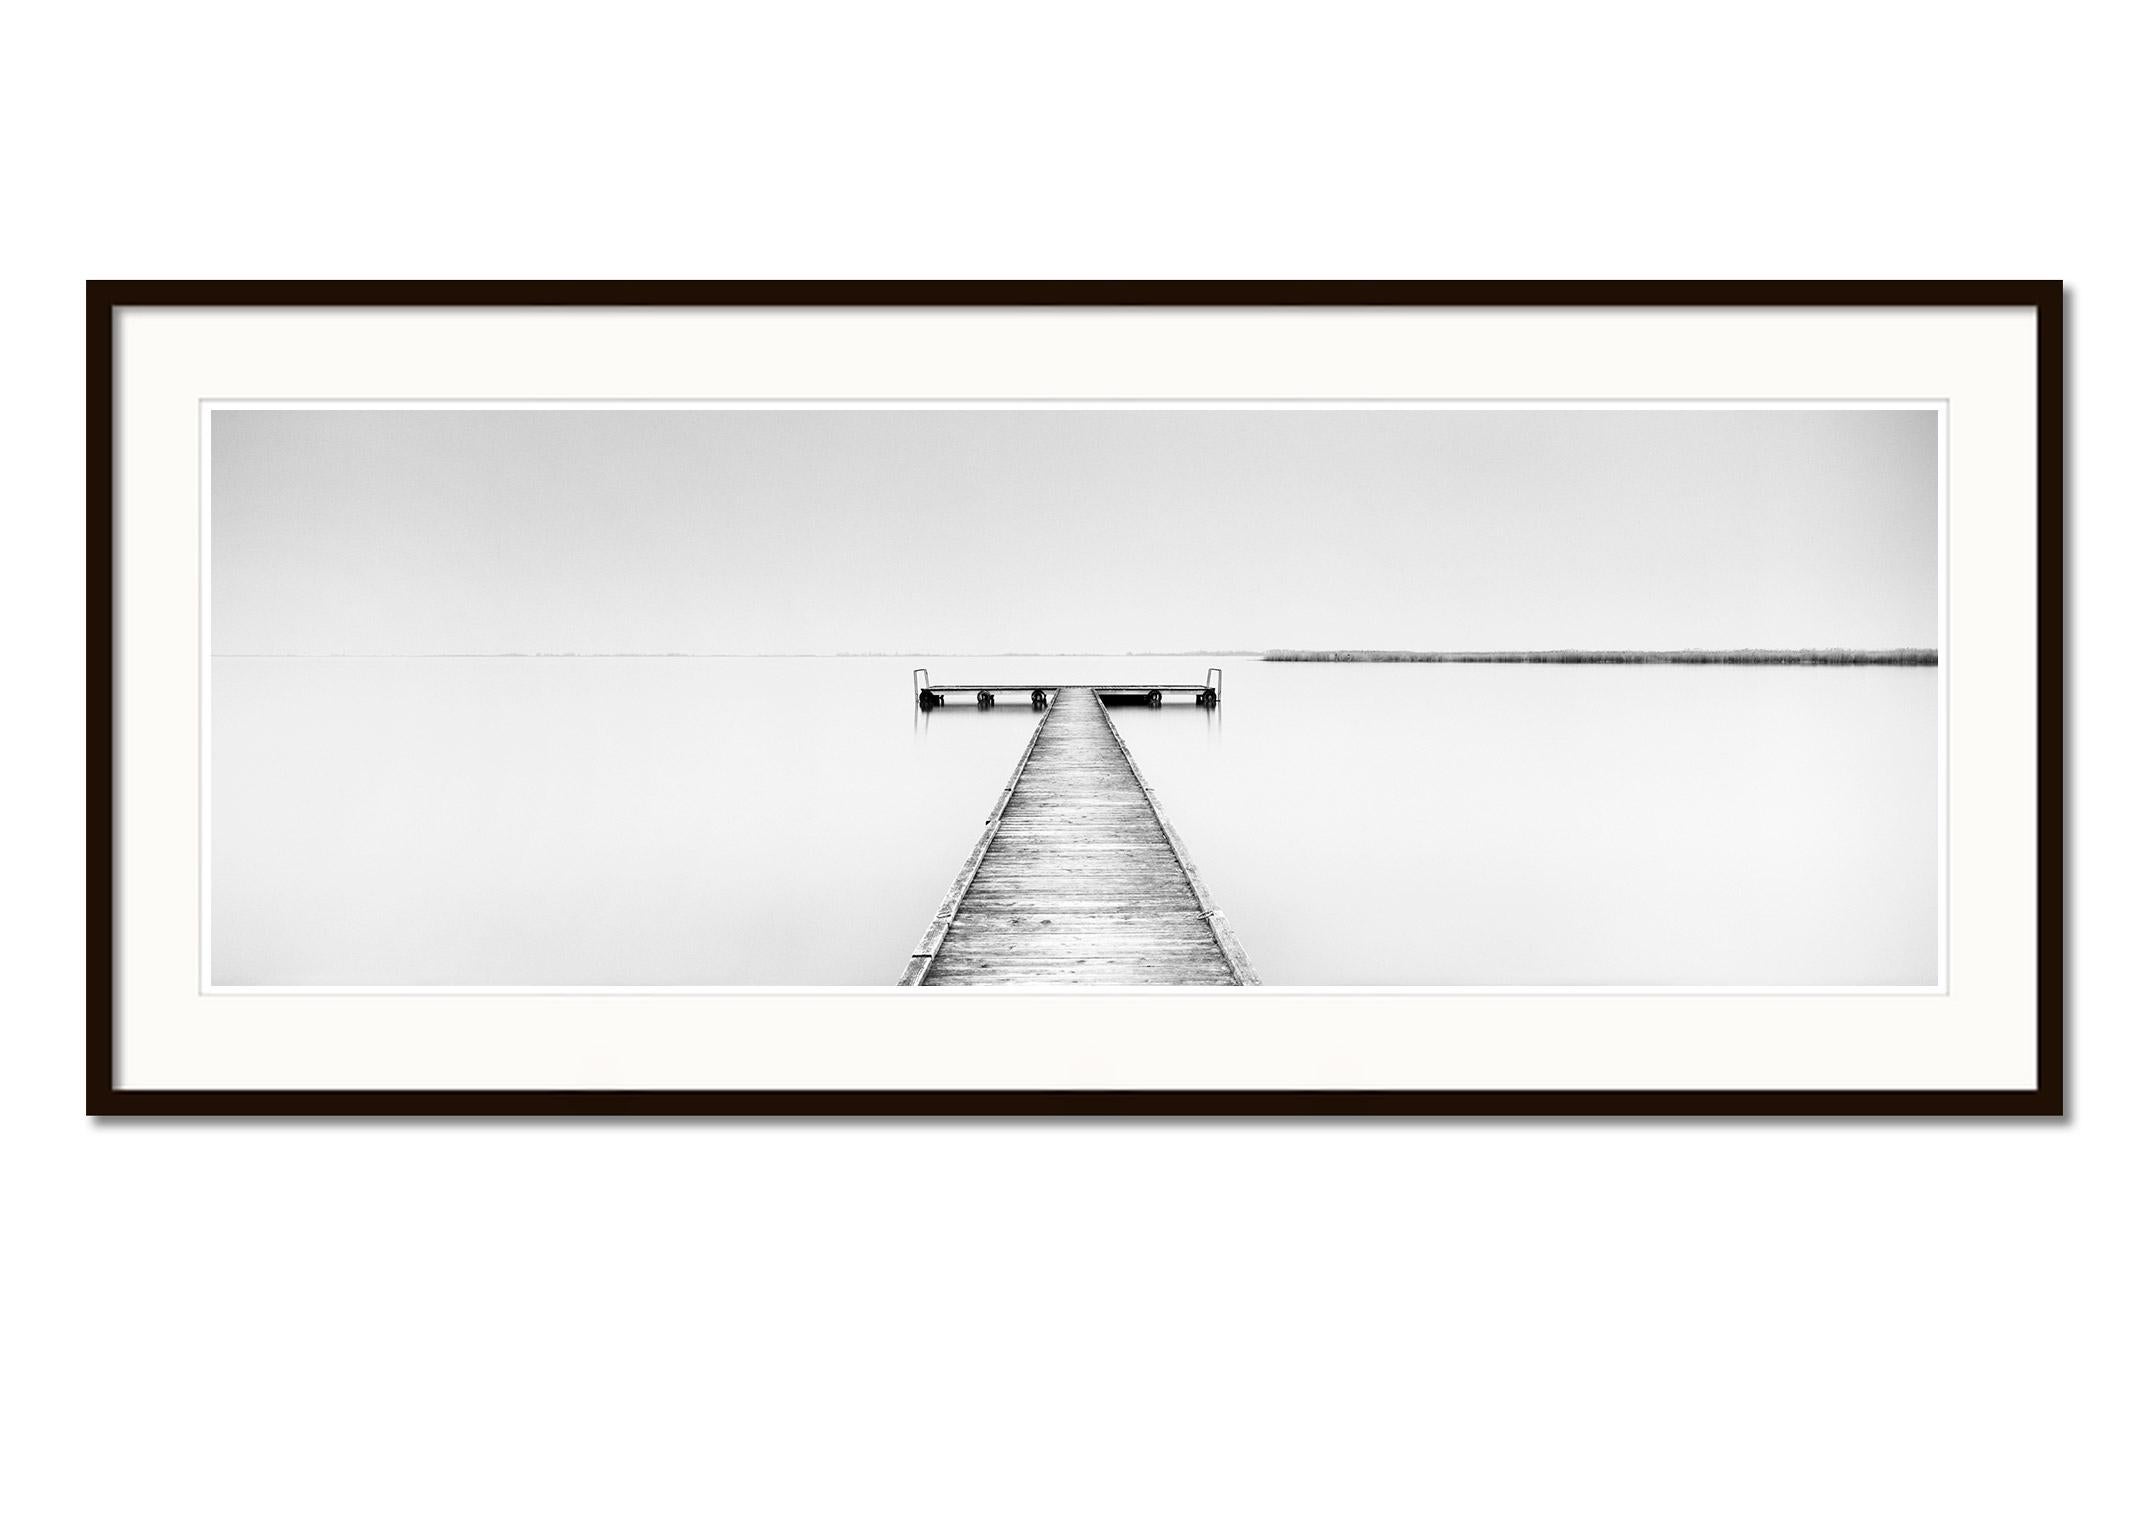 Holz-Pfeiler Panorama, minimalistischer Schwarz-Weiß-Wasserlandschaftsfotografie-Kunstdruck (Grau), Landscape Photograph, von Gerald Berghammer